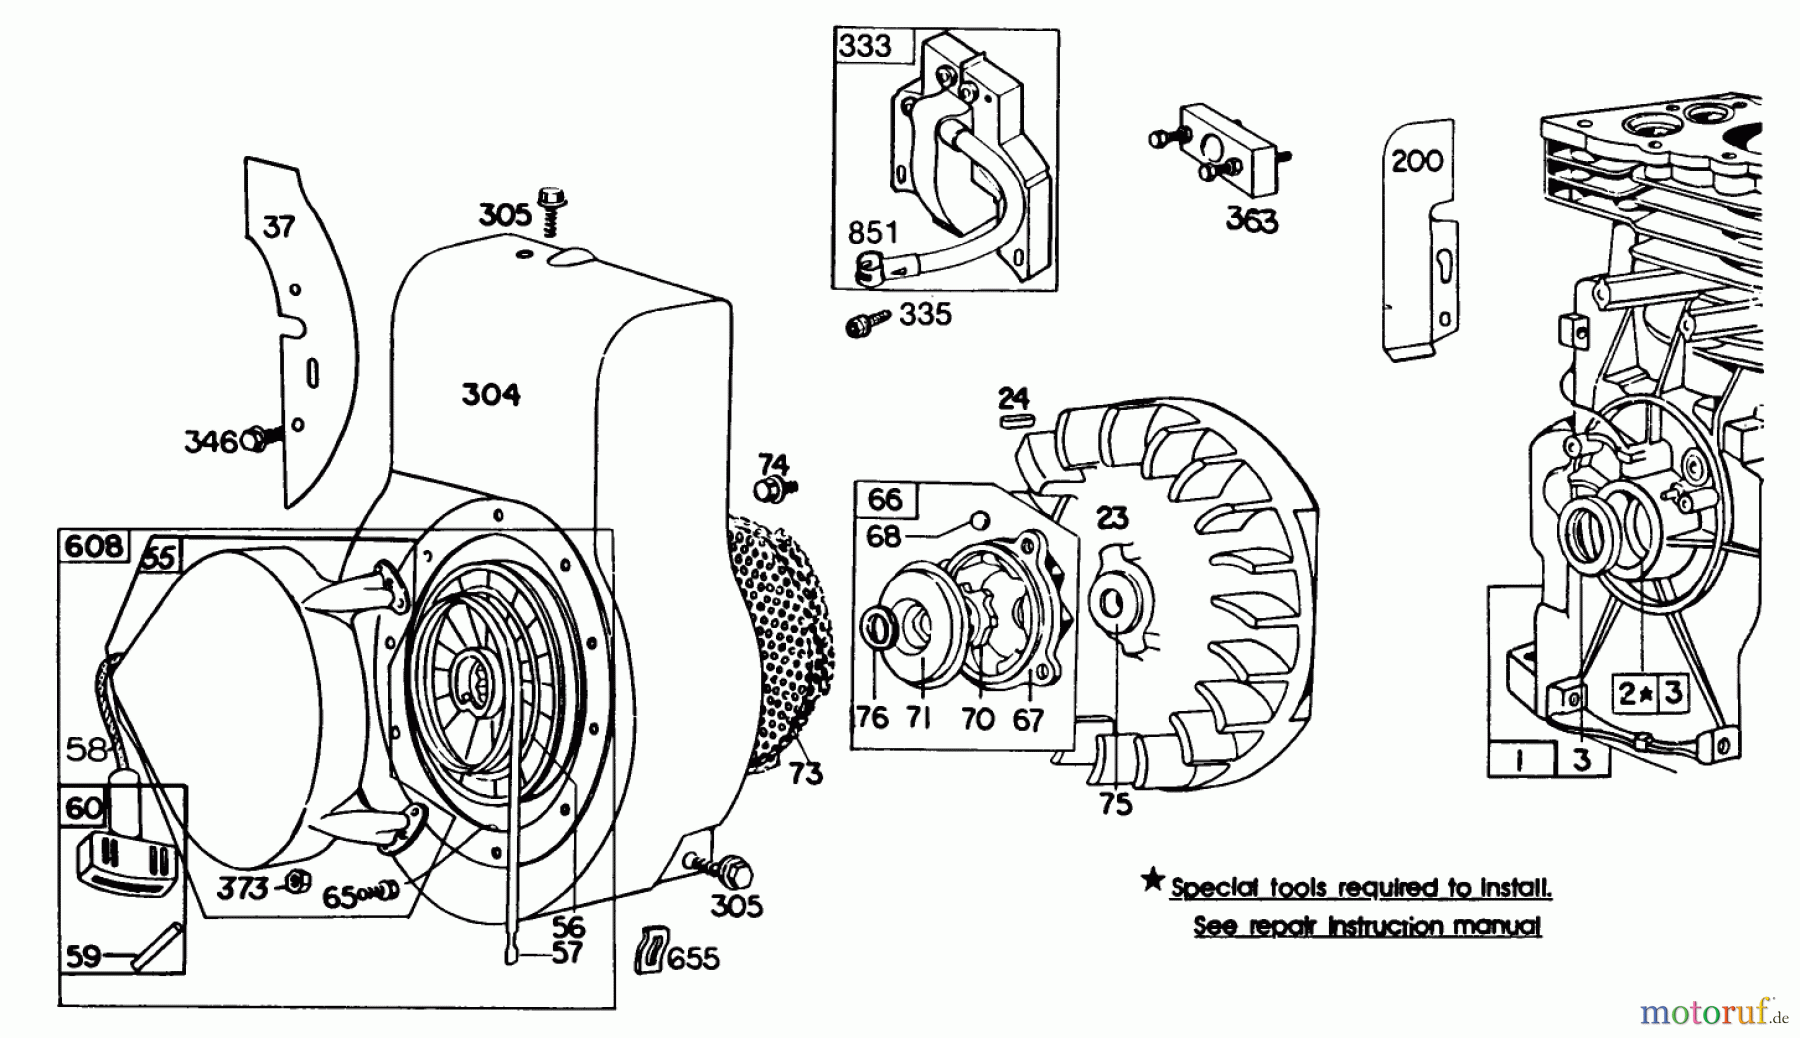  Laubbläser / Laubsauger 62912 - Toro 5 hp Lawn Vacuum (SN: 7000001 - 7999999) (1987) ENGINE BRIGGS & STRATTON MODEL NO. 130202-1640-01 #2